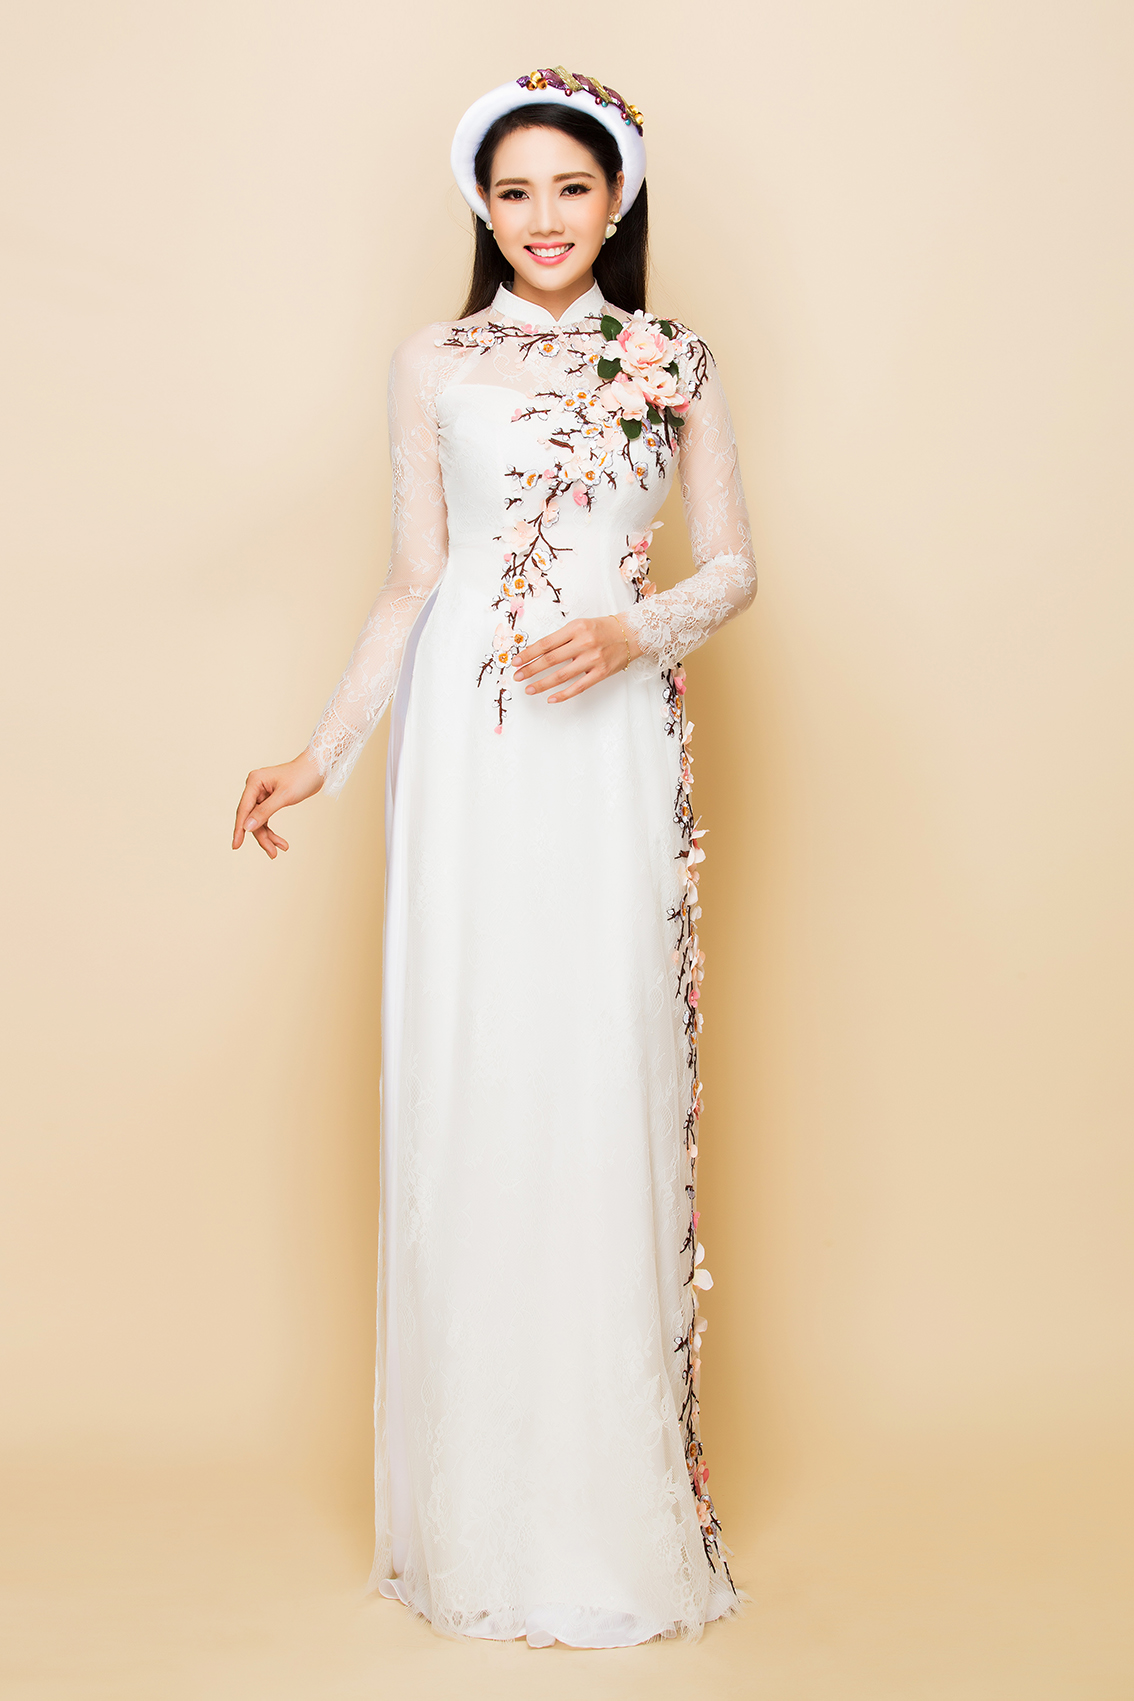 Ngày cưới ai cũng mong muốn tìm cho mình một chiếc áo dài ưng ý, hãy cùng Marry tham khảo những thiết kế áo dài mới nhất từ thương hiệu Minh Châu.